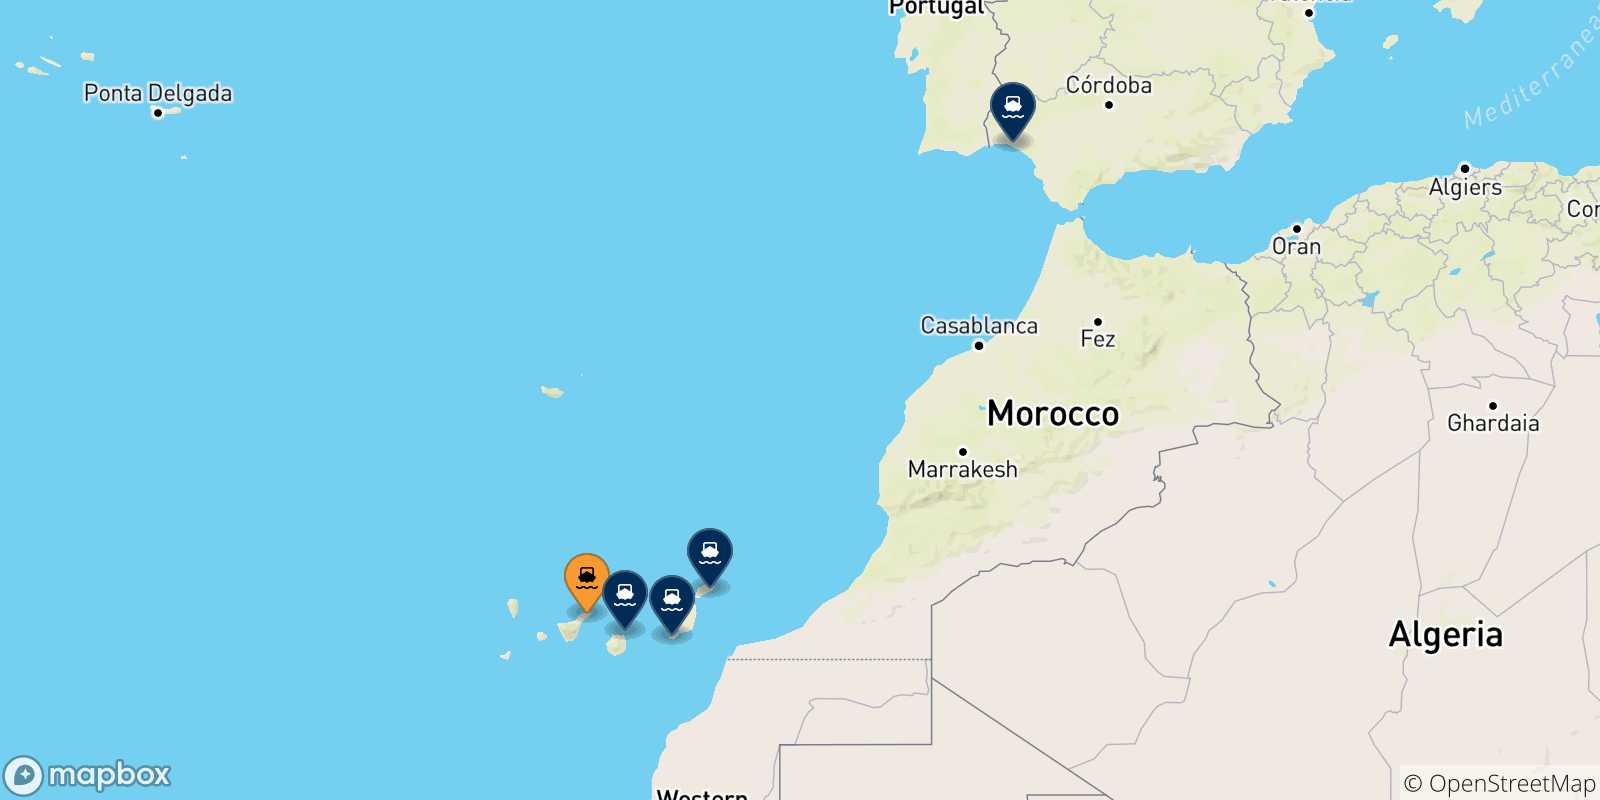 Mappa delle possibili rotte tra Santa Cruz De Tenerife e la Spagna